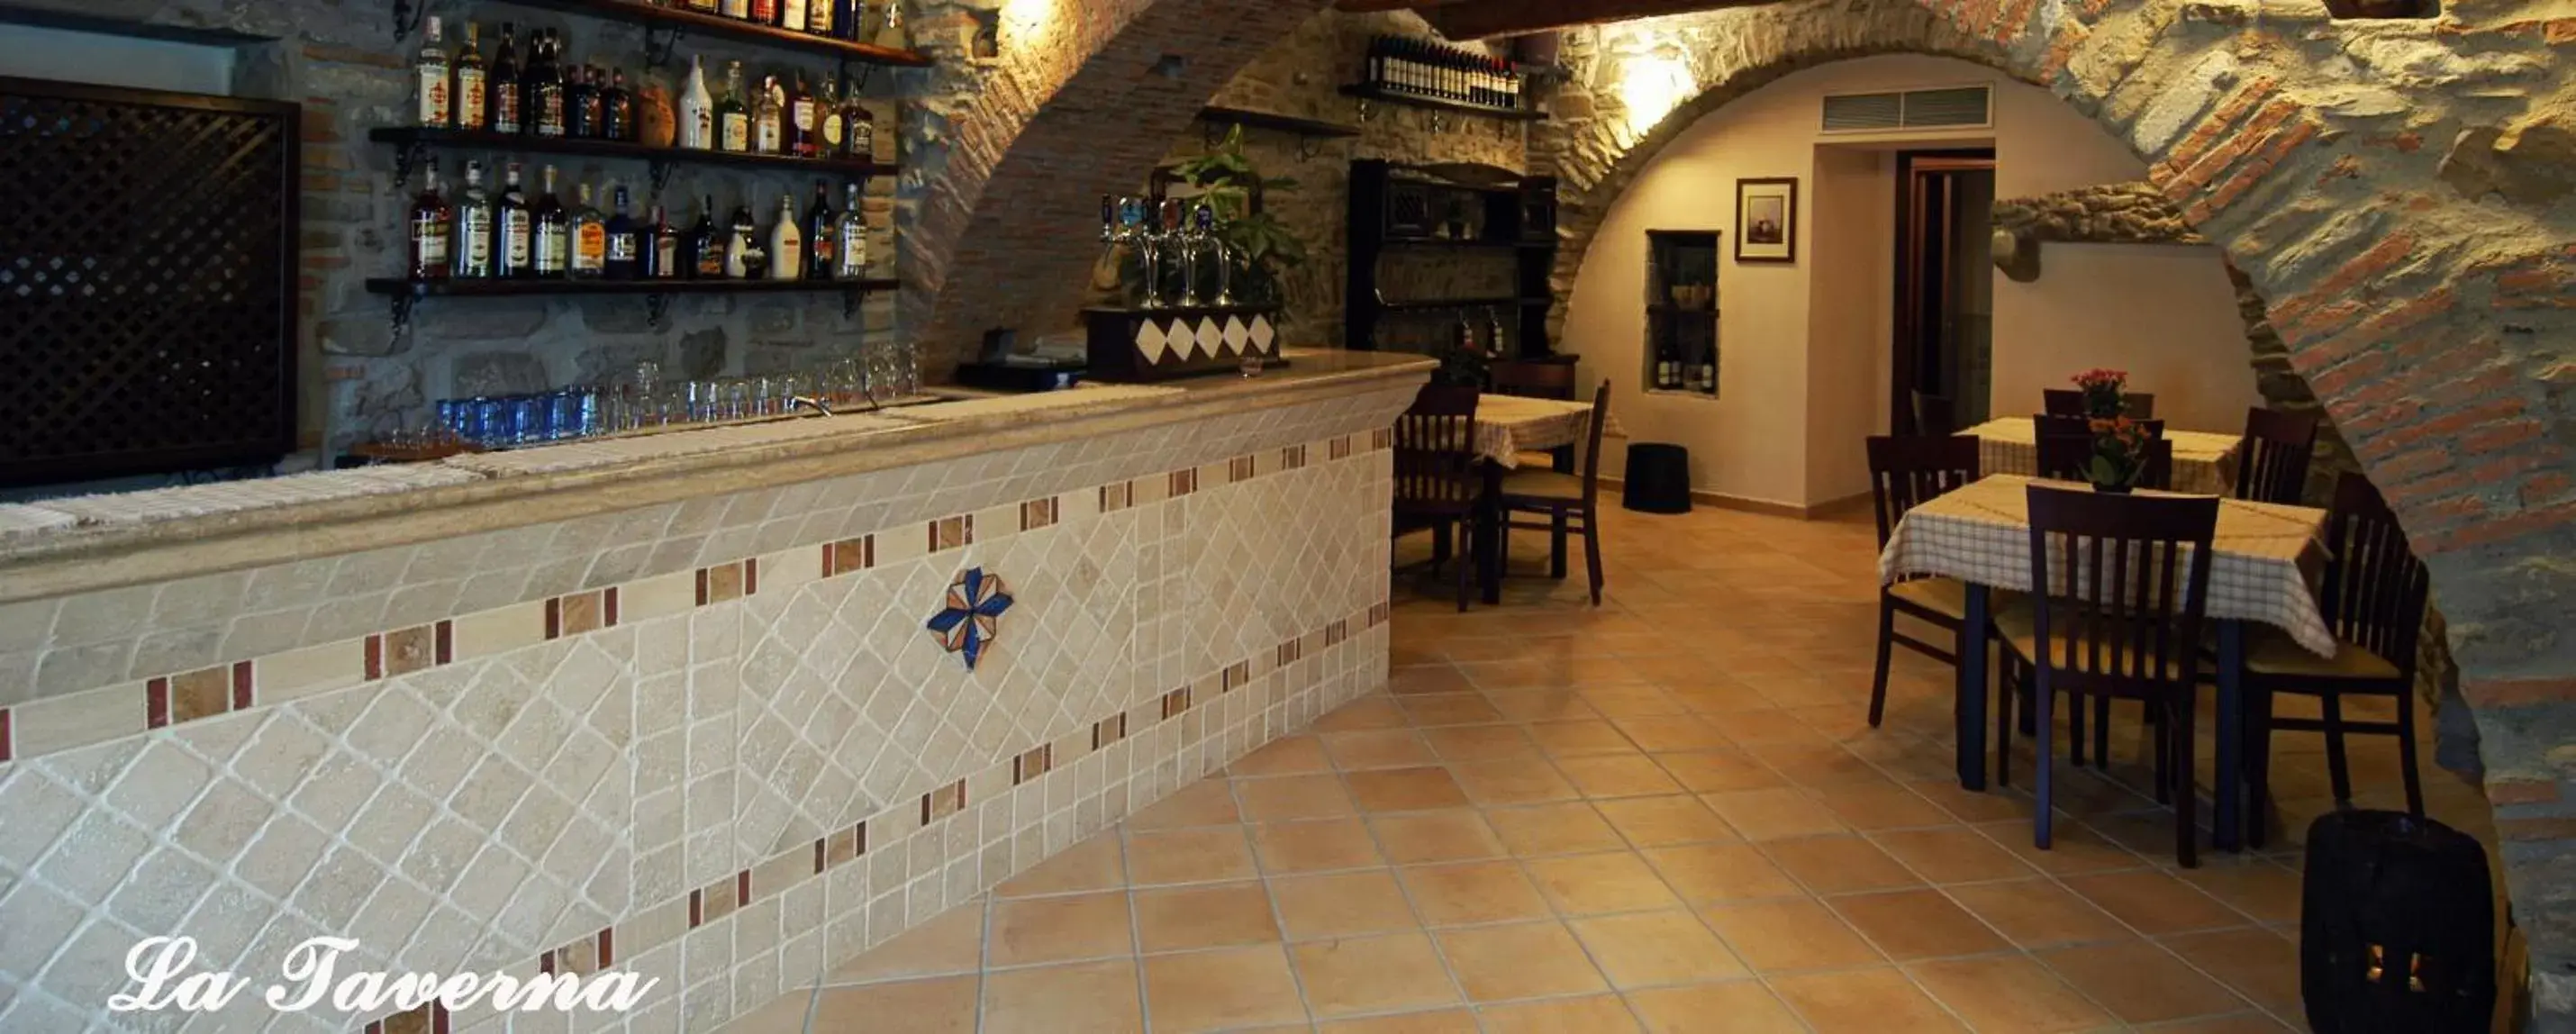 Lounge or bar in Palazzo dei Poeti